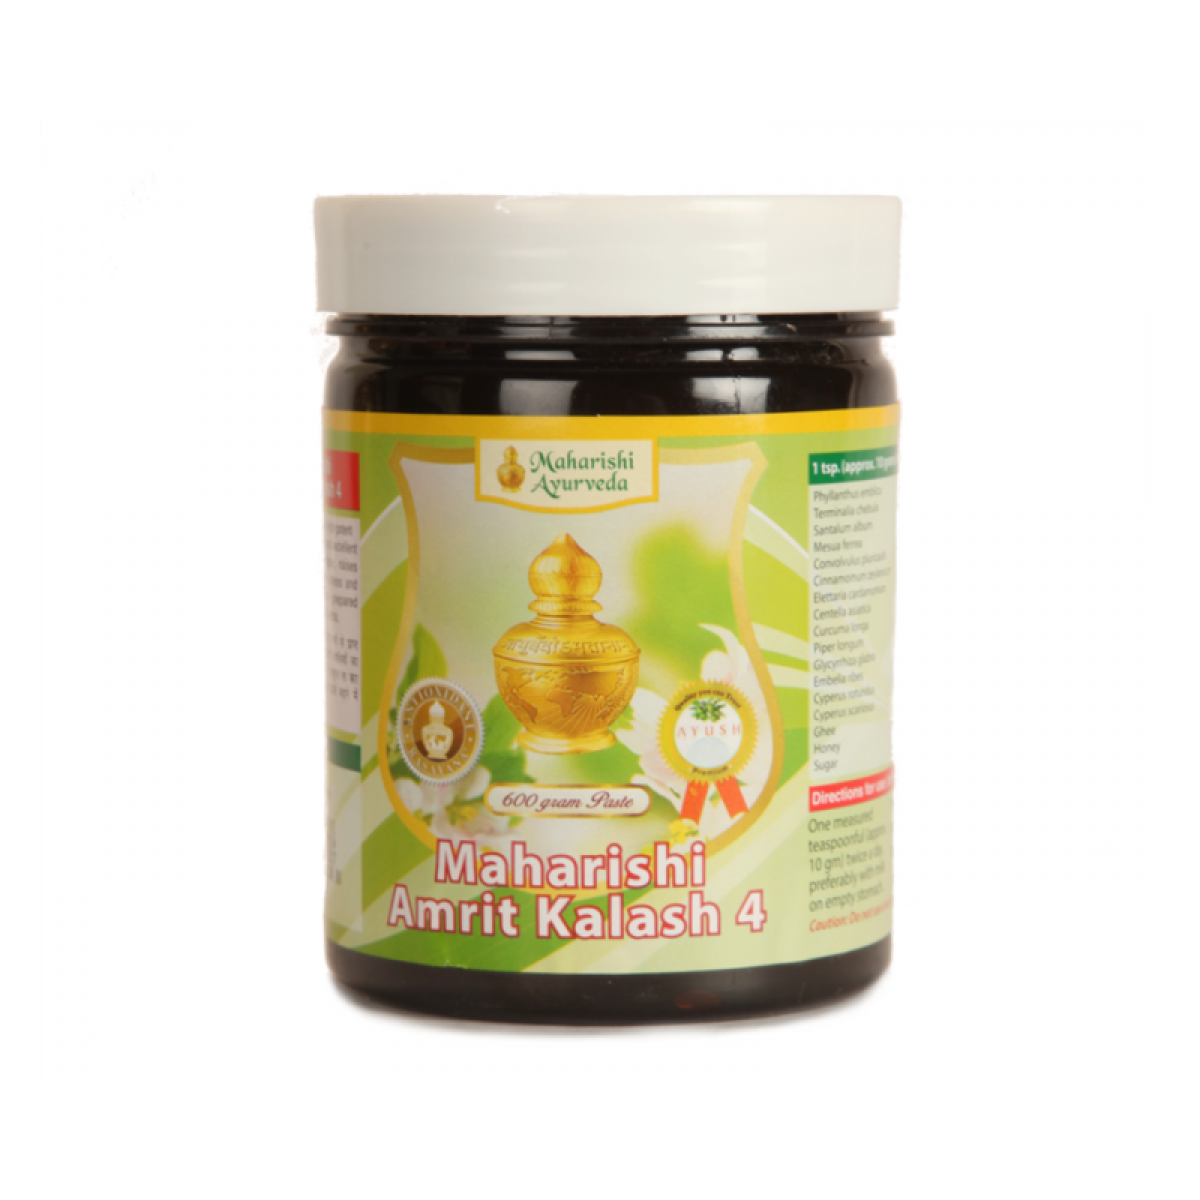 Buy Maharishi Amrit Kalash 4 Paste at Best Price Online